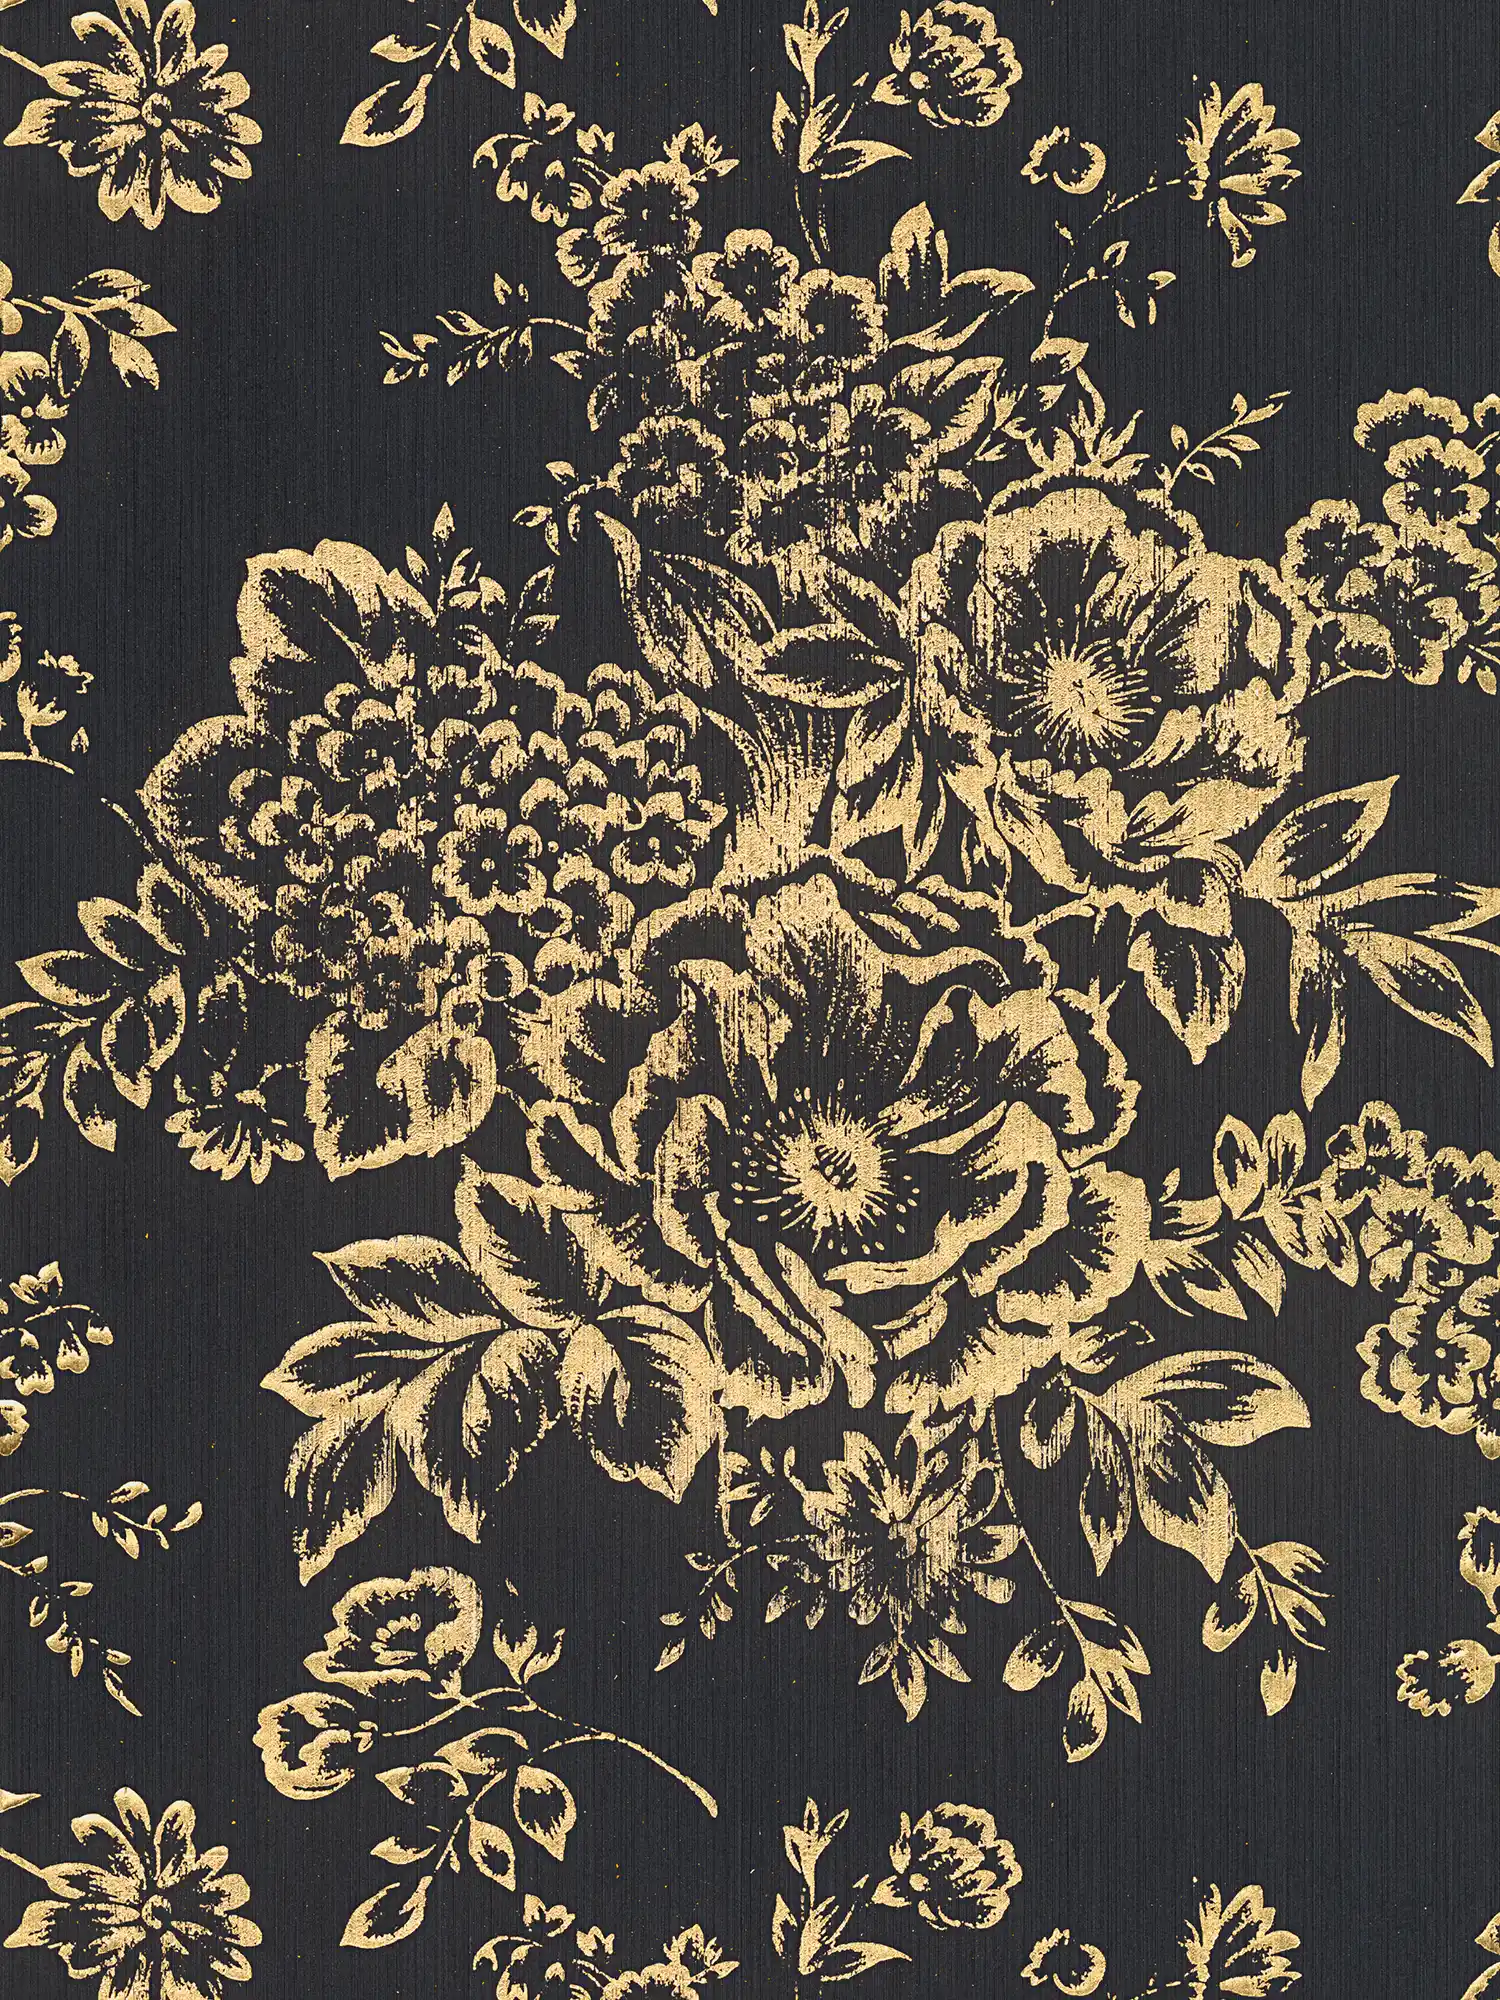         Papier peint structuré avec motif floral doré - or, noir
    